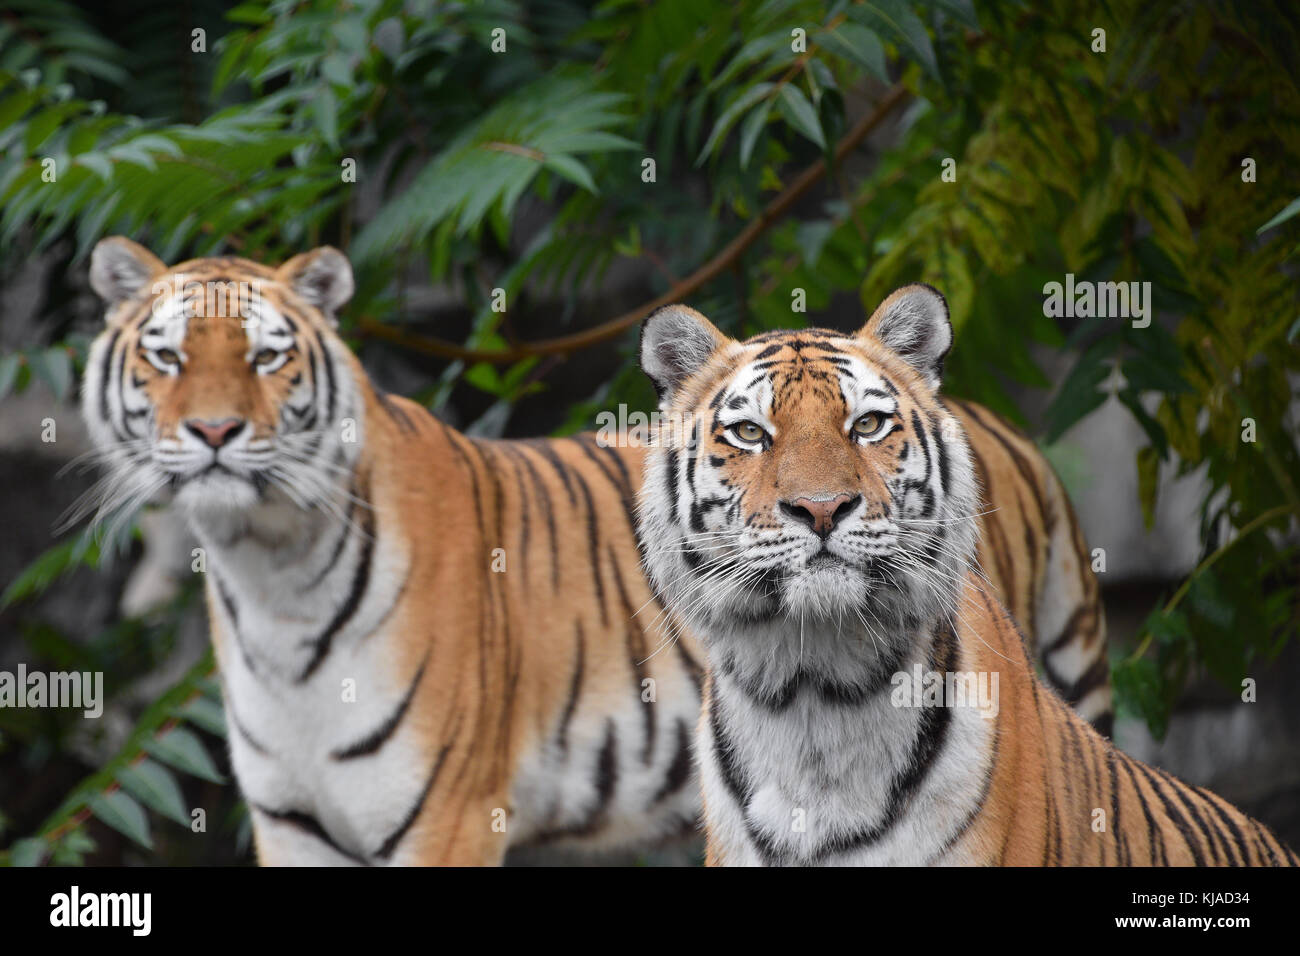 Vorne Porträt von zwei Junge weibliche Amur (Sibirische) Tiger an Kamera über grüne Wald Hintergrund Suchen schließen, Low Angle View Stockfoto